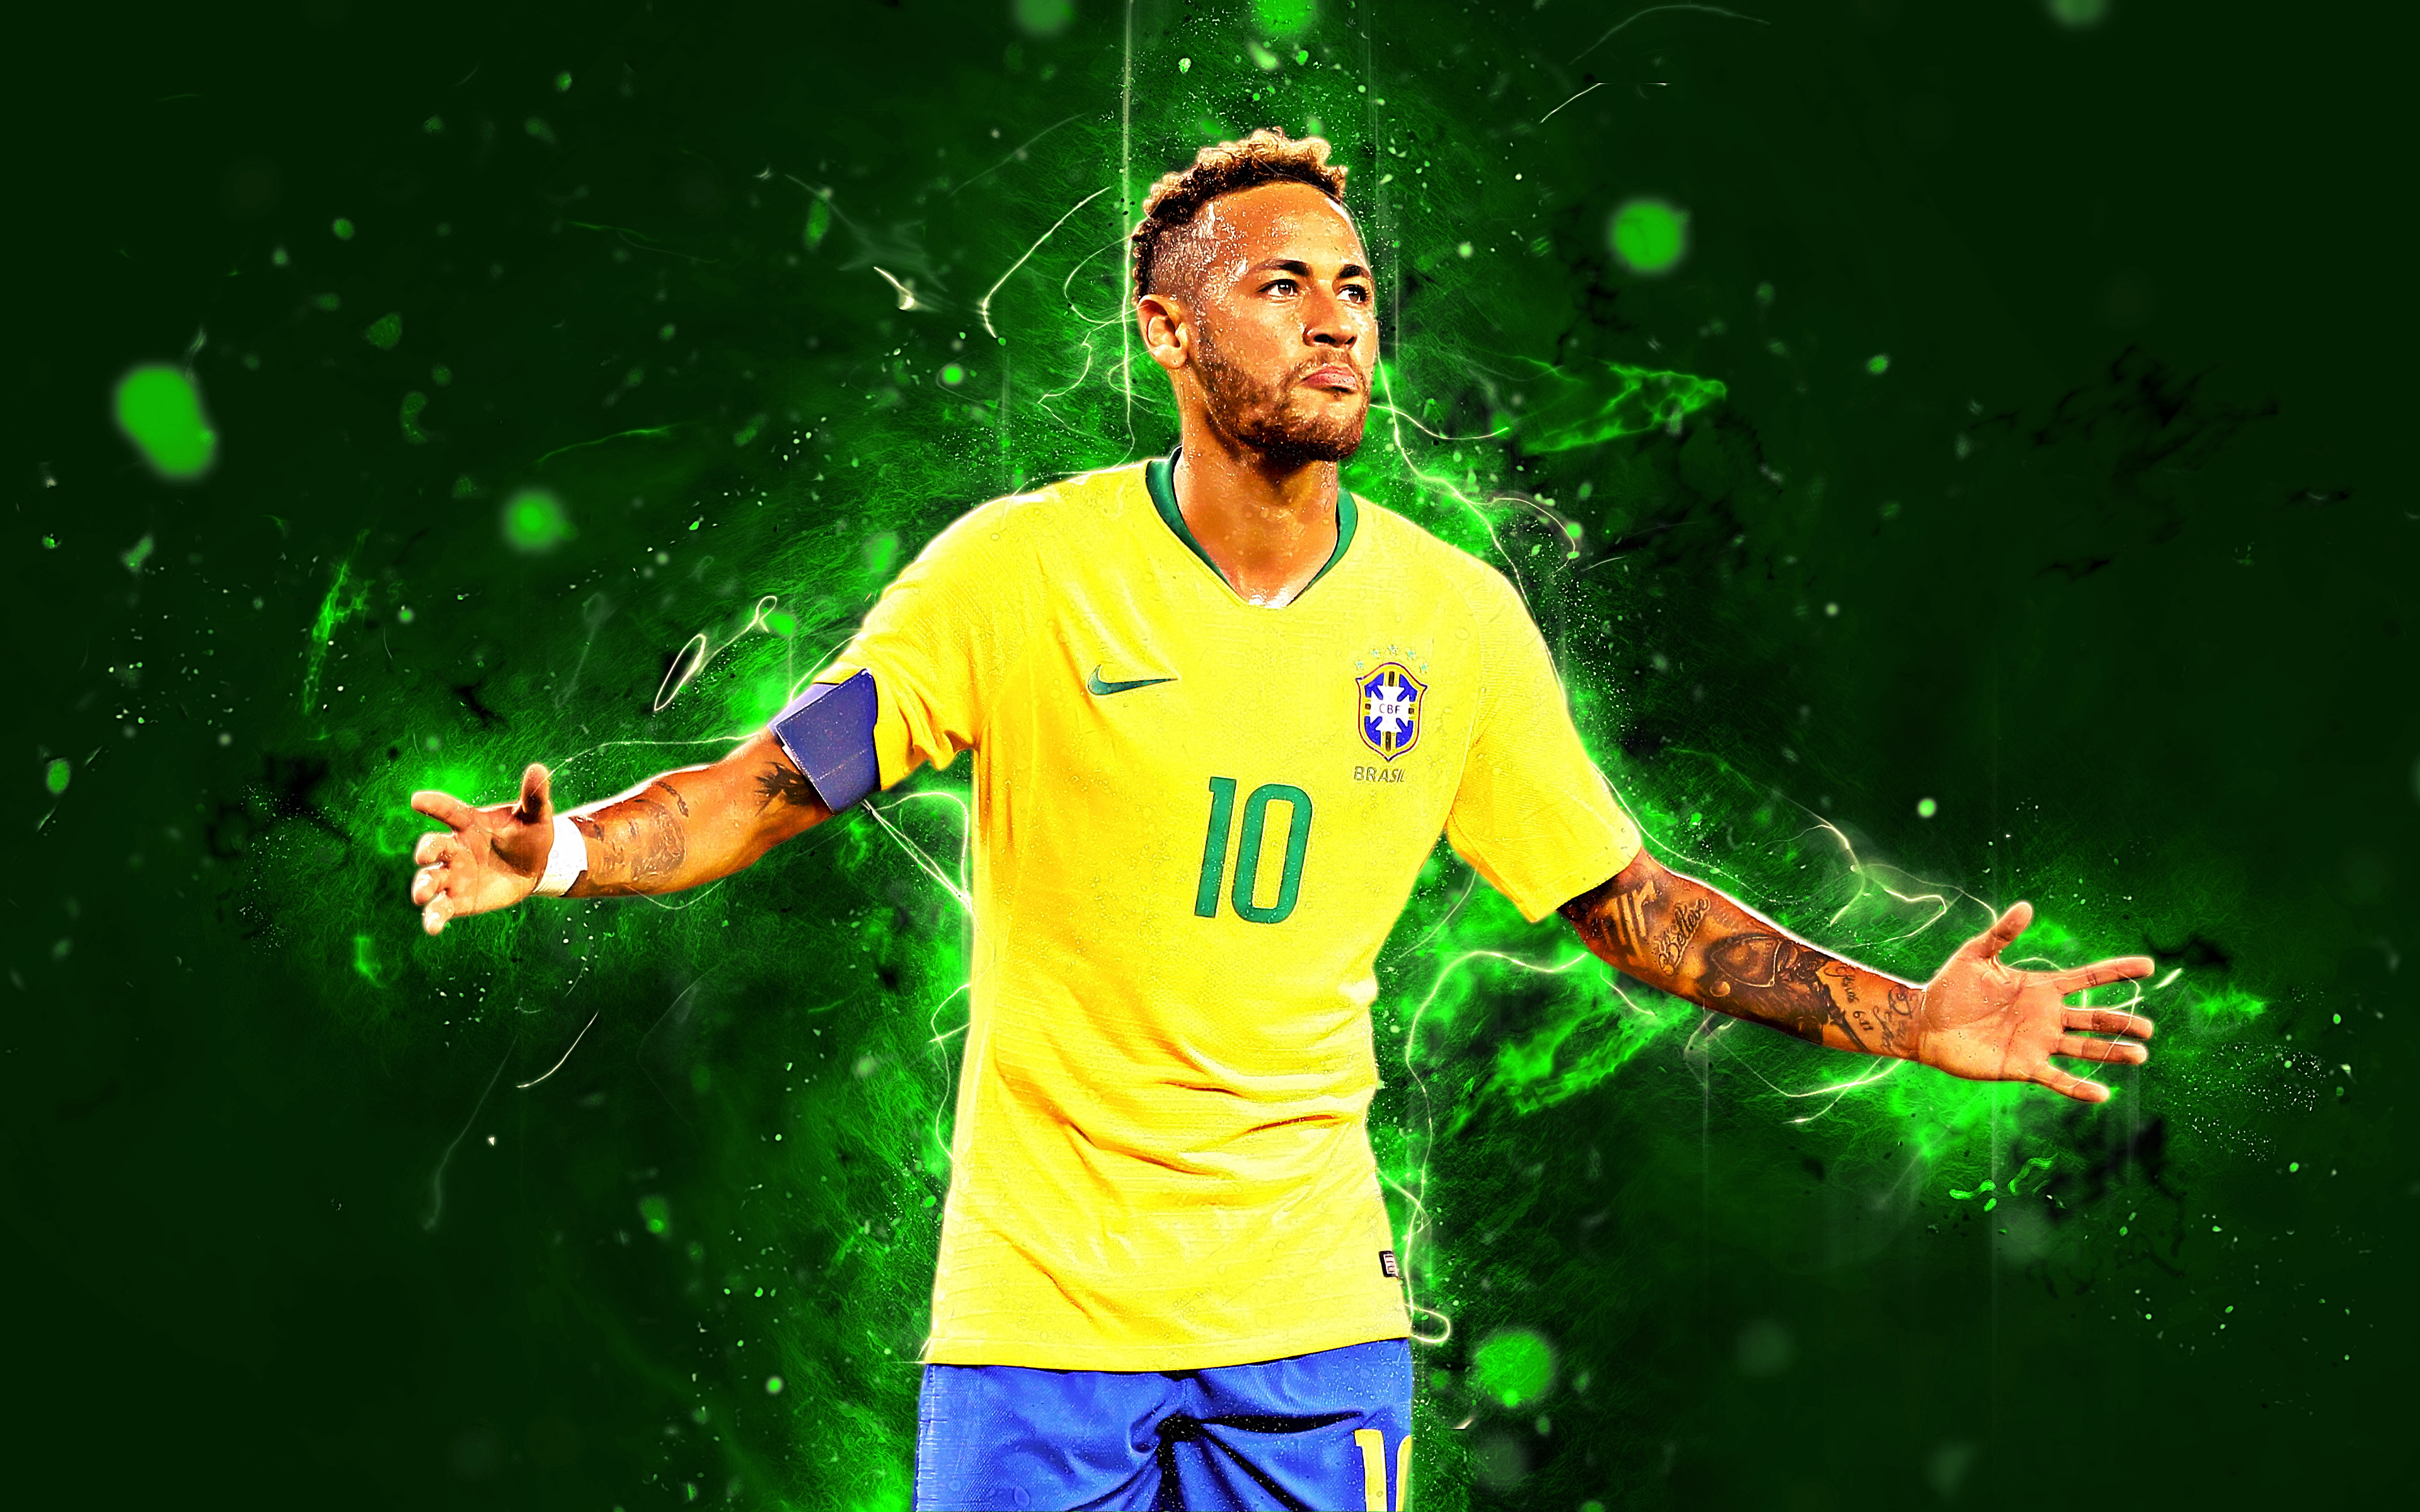 Papel De Parede Do Neymar , HD Wallpaper & Backgrounds